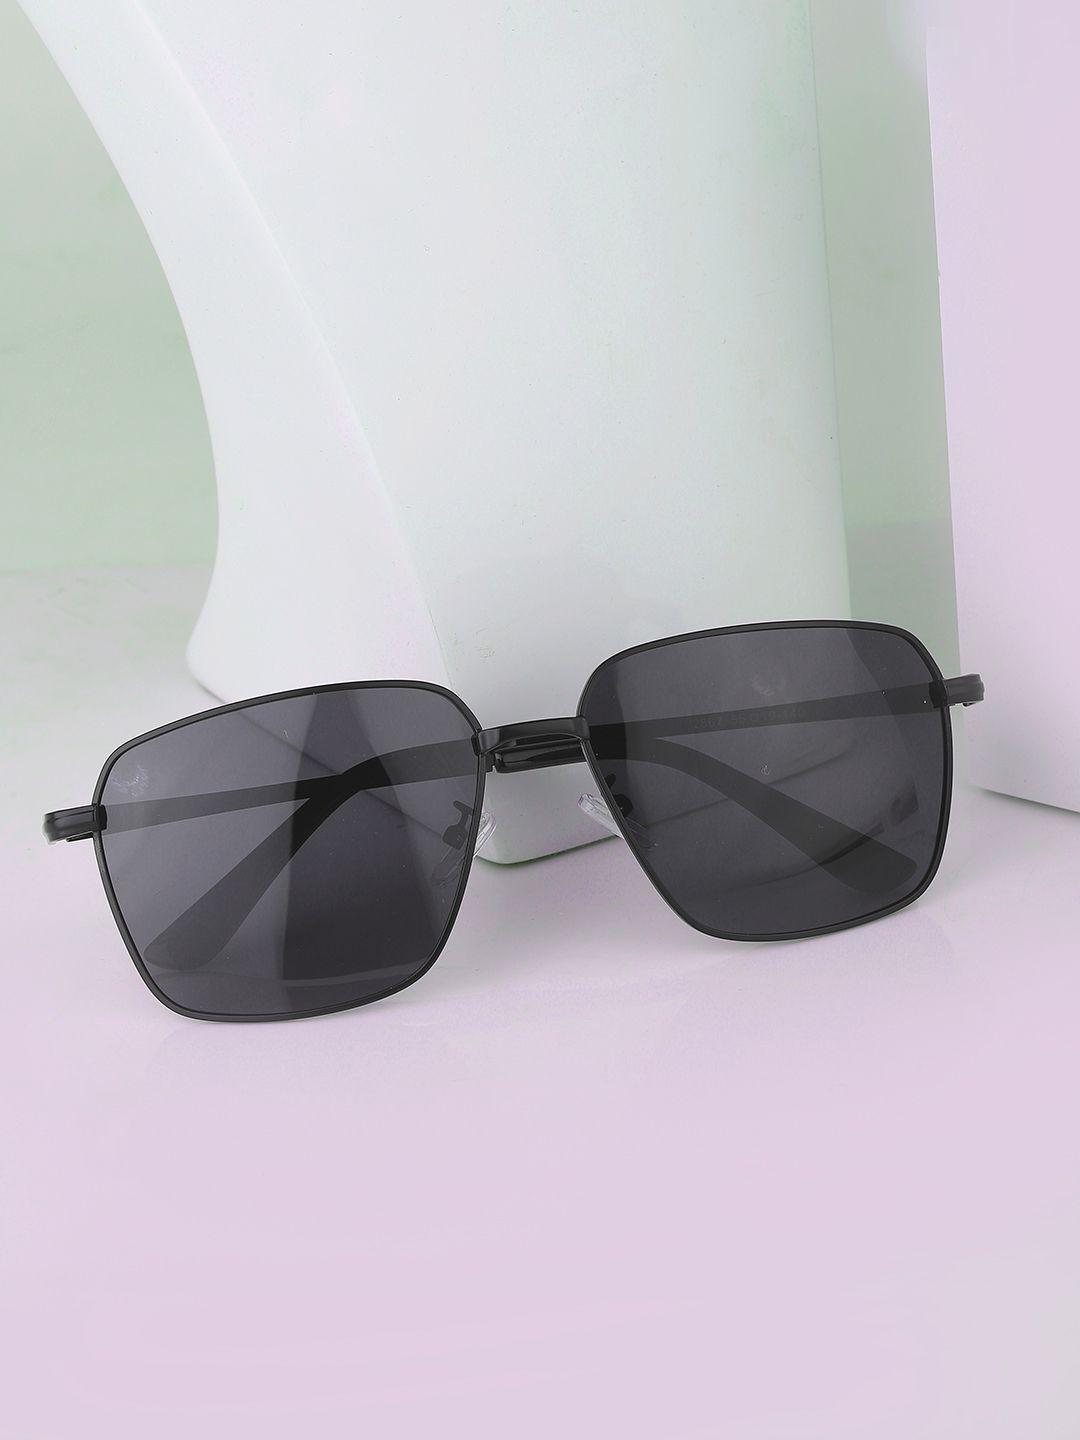 carlton-london-men-black-lens-&-black-rectangle-sunglasses-clsm019-